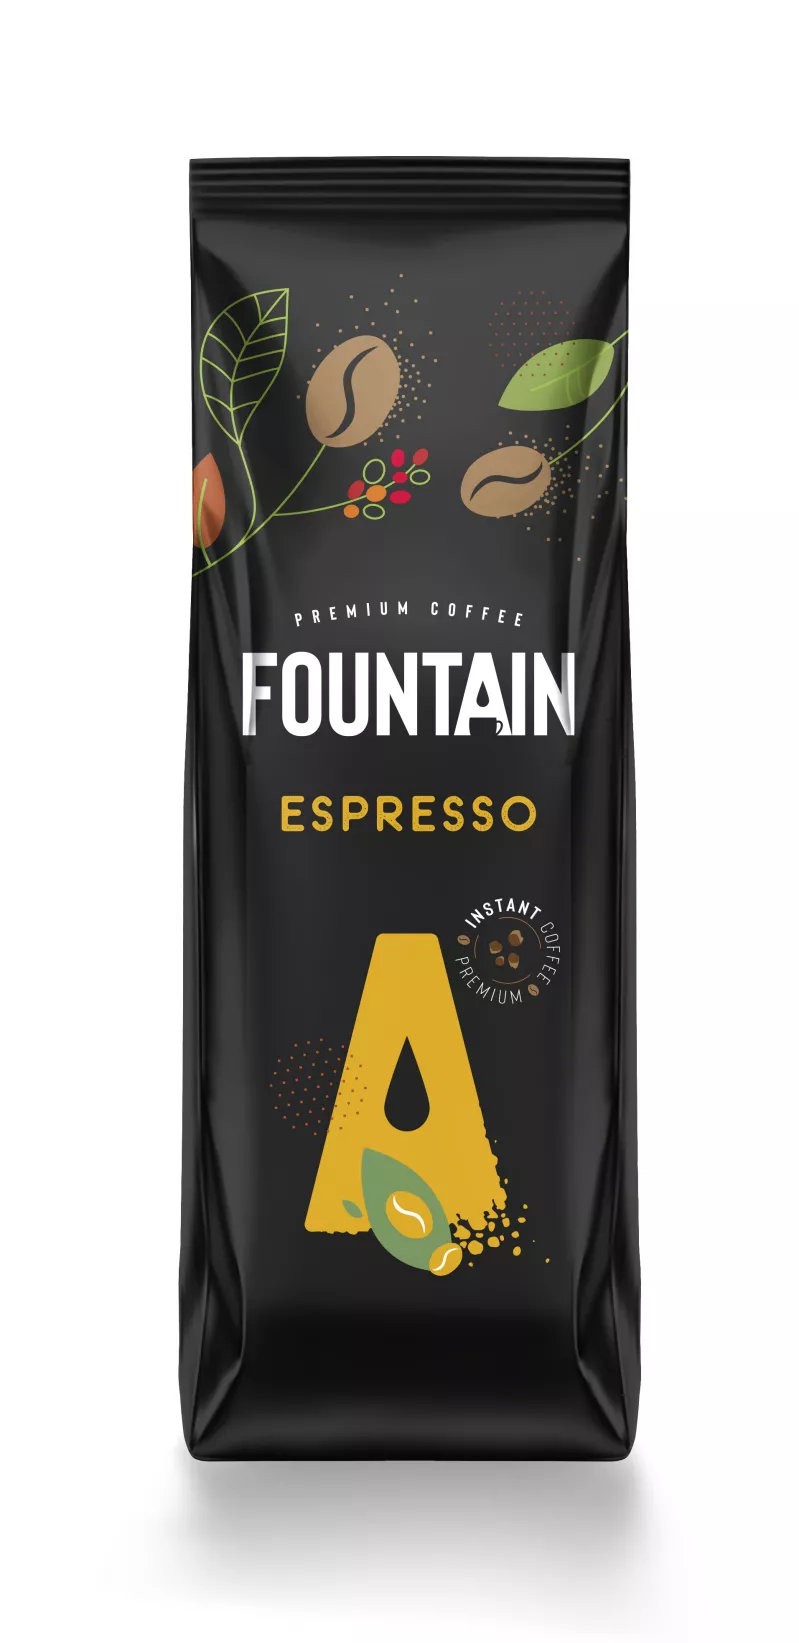 Fountain espresso